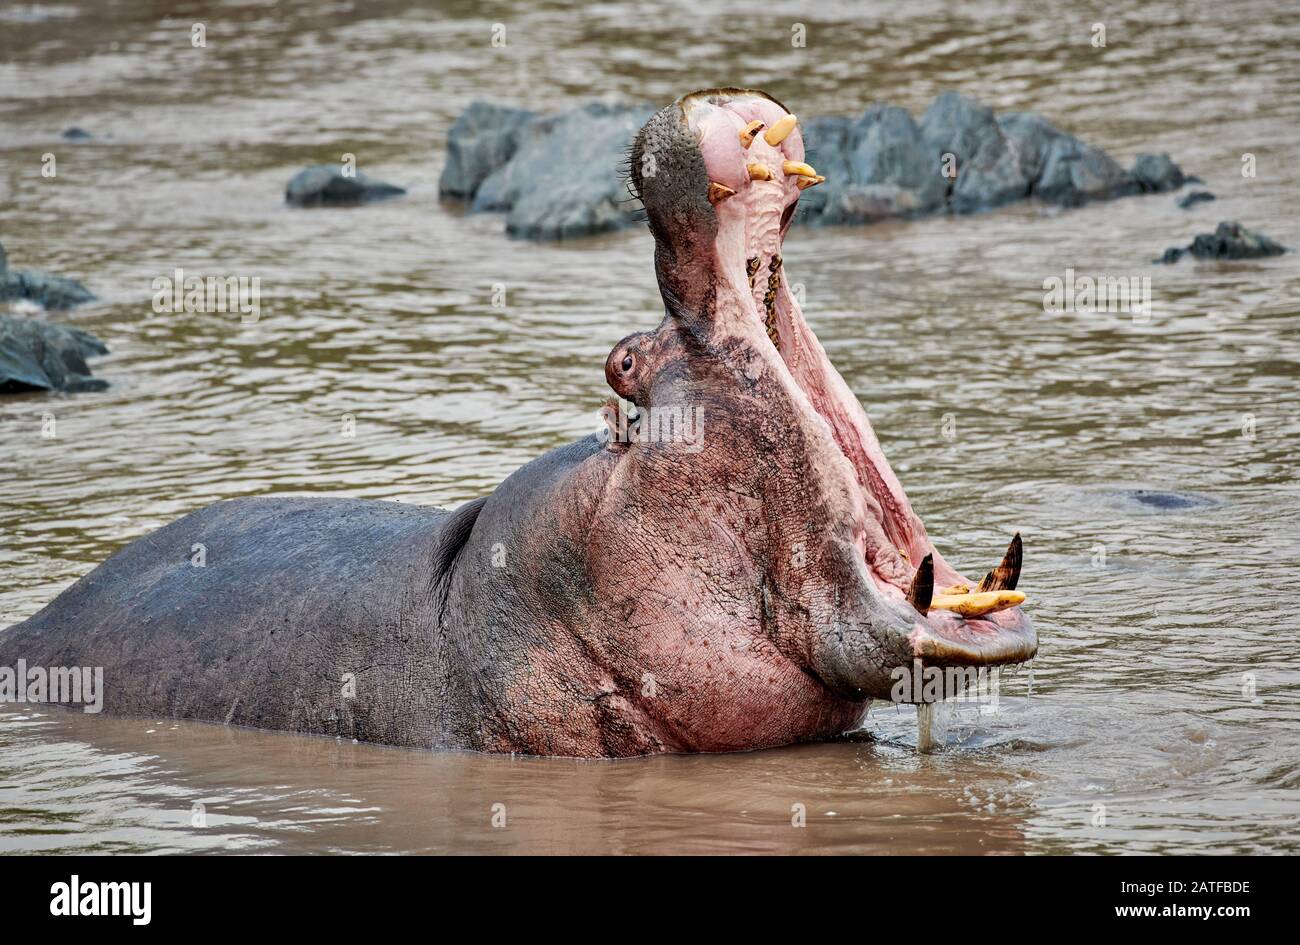 Ippopotamo nascente con denti enormi (Hippopotamus anfibio) nella famosa Hippo-Pool del Serengeti National Park, sito patrimonio dell'umanità dell'UNESCO, Tanzania, Africa Foto Stock